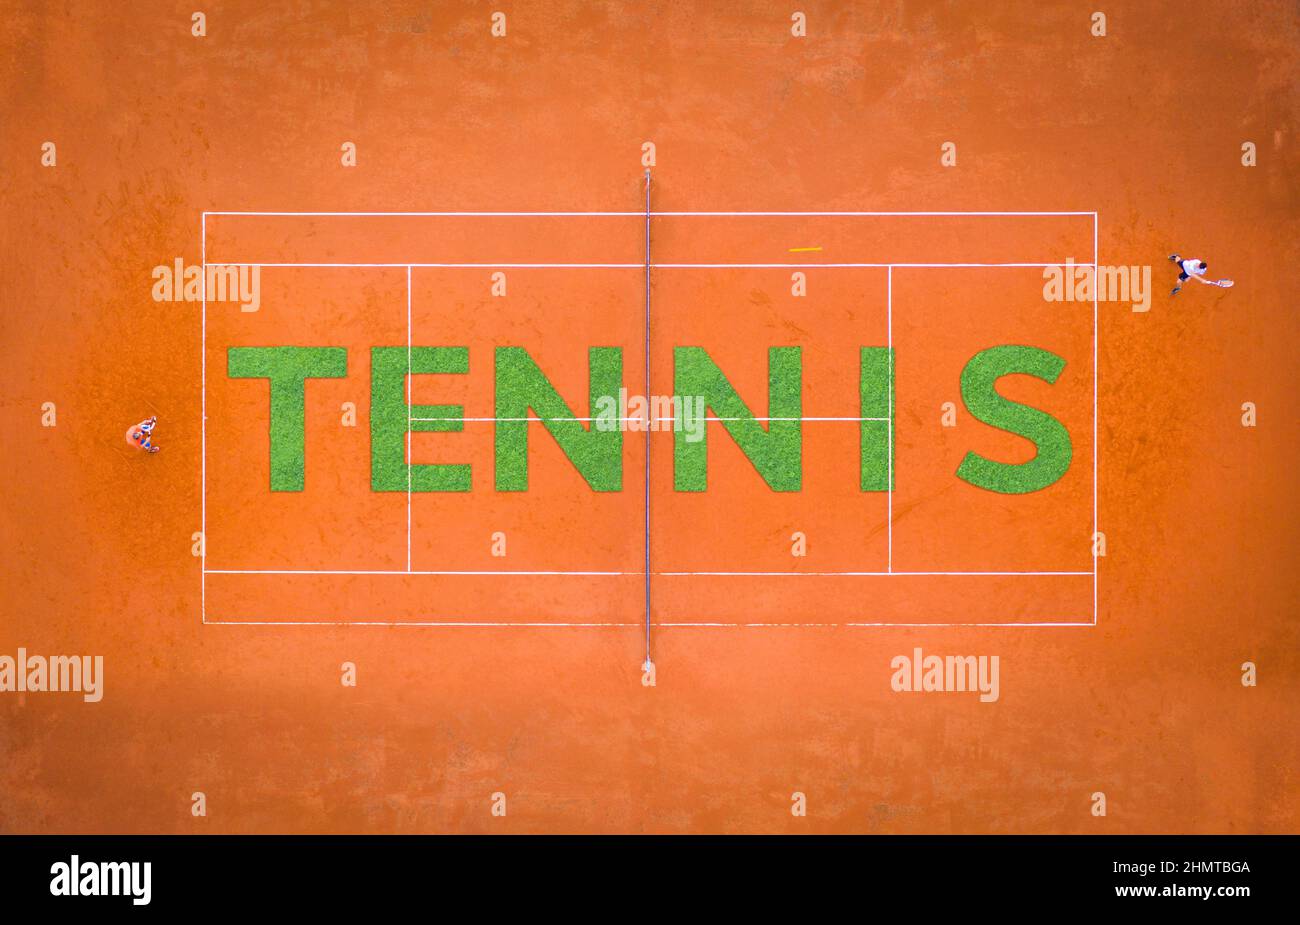 Pista de tenis de arena naranja con dos jugadores jugando desde arriba con letras hechas de hierba Foto de stock